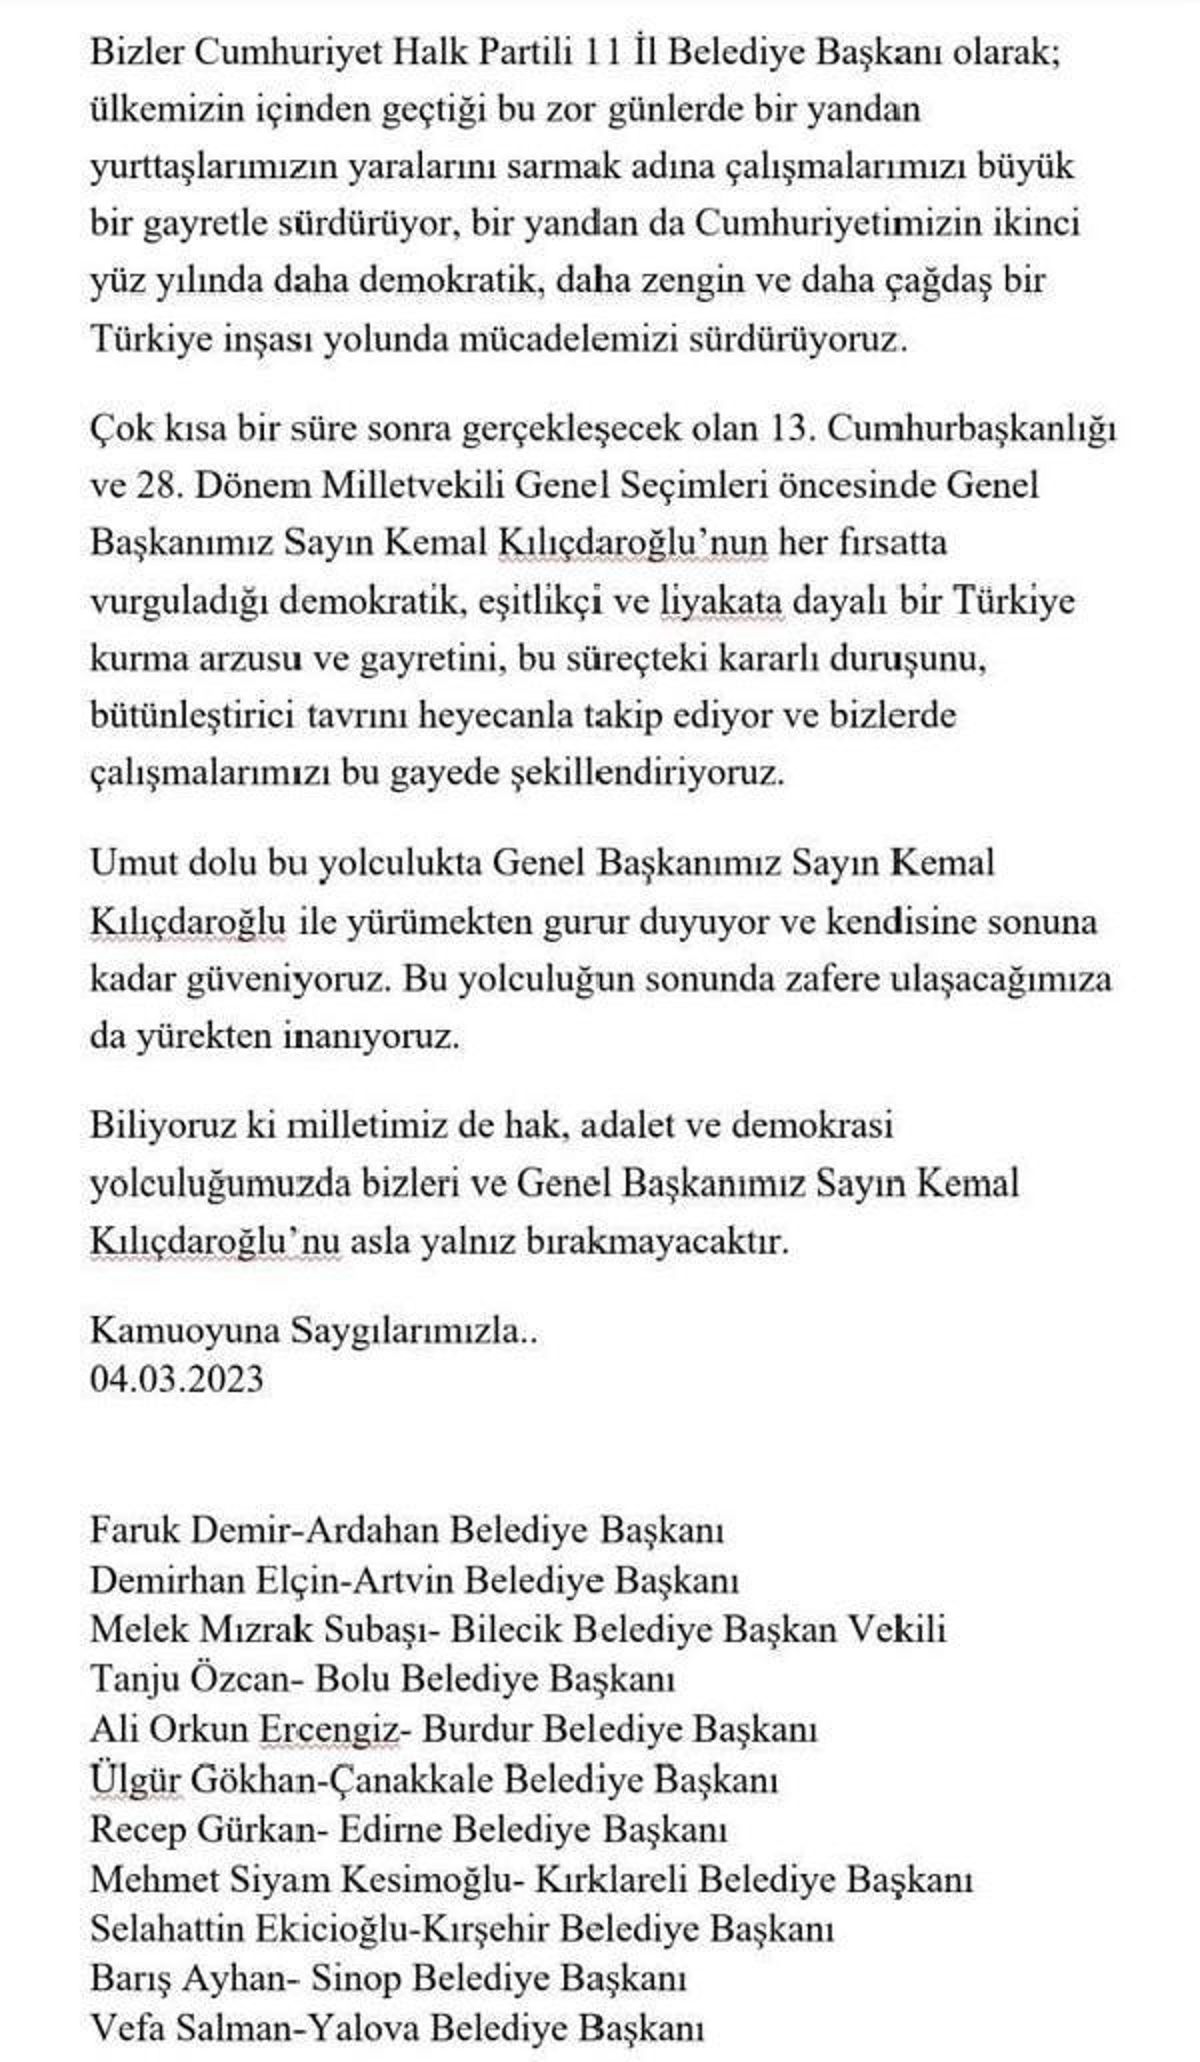 CHP'li 11 vilayet belediye lideri: Kılıçdaroğlu'na sonuna kadar güveniyoruz